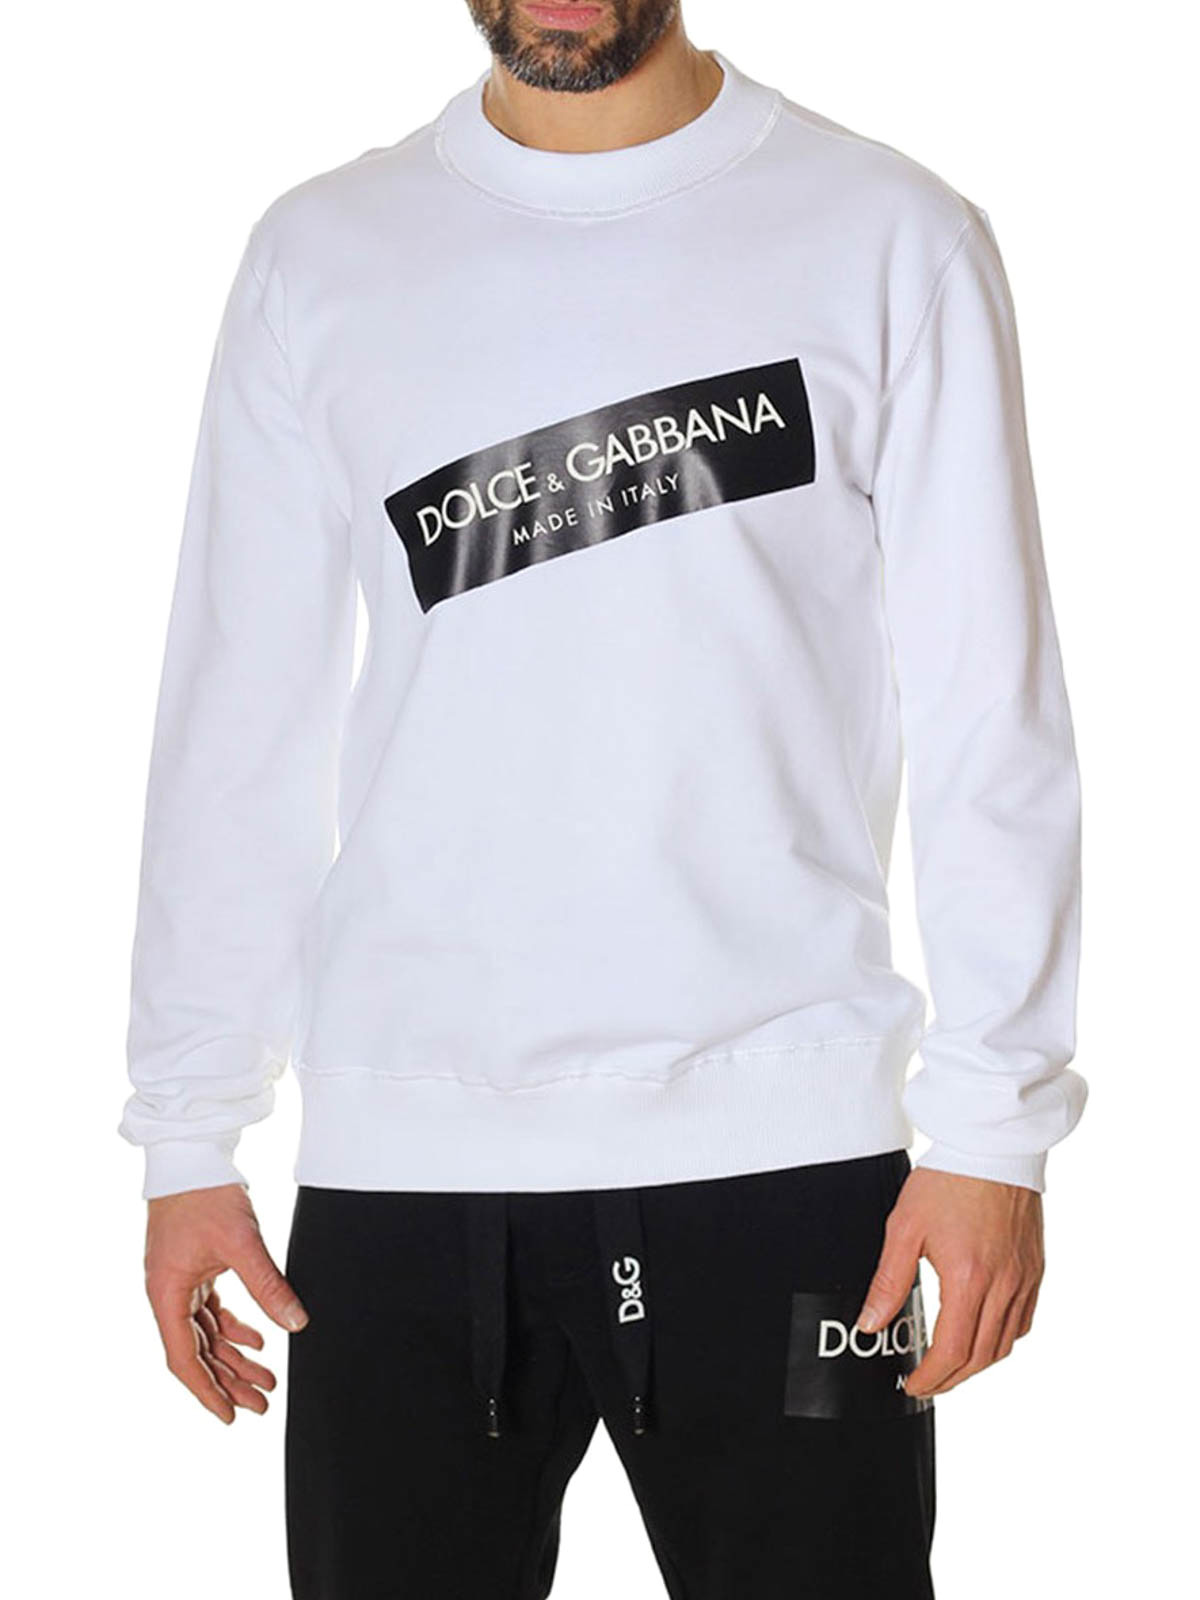 Ropa Ropa de género neutro para adultos Sudaderas con y sin capucha Sudaderas Dolce &Gabbana Men's Letter Crown Long Sleeve Sweater XL 